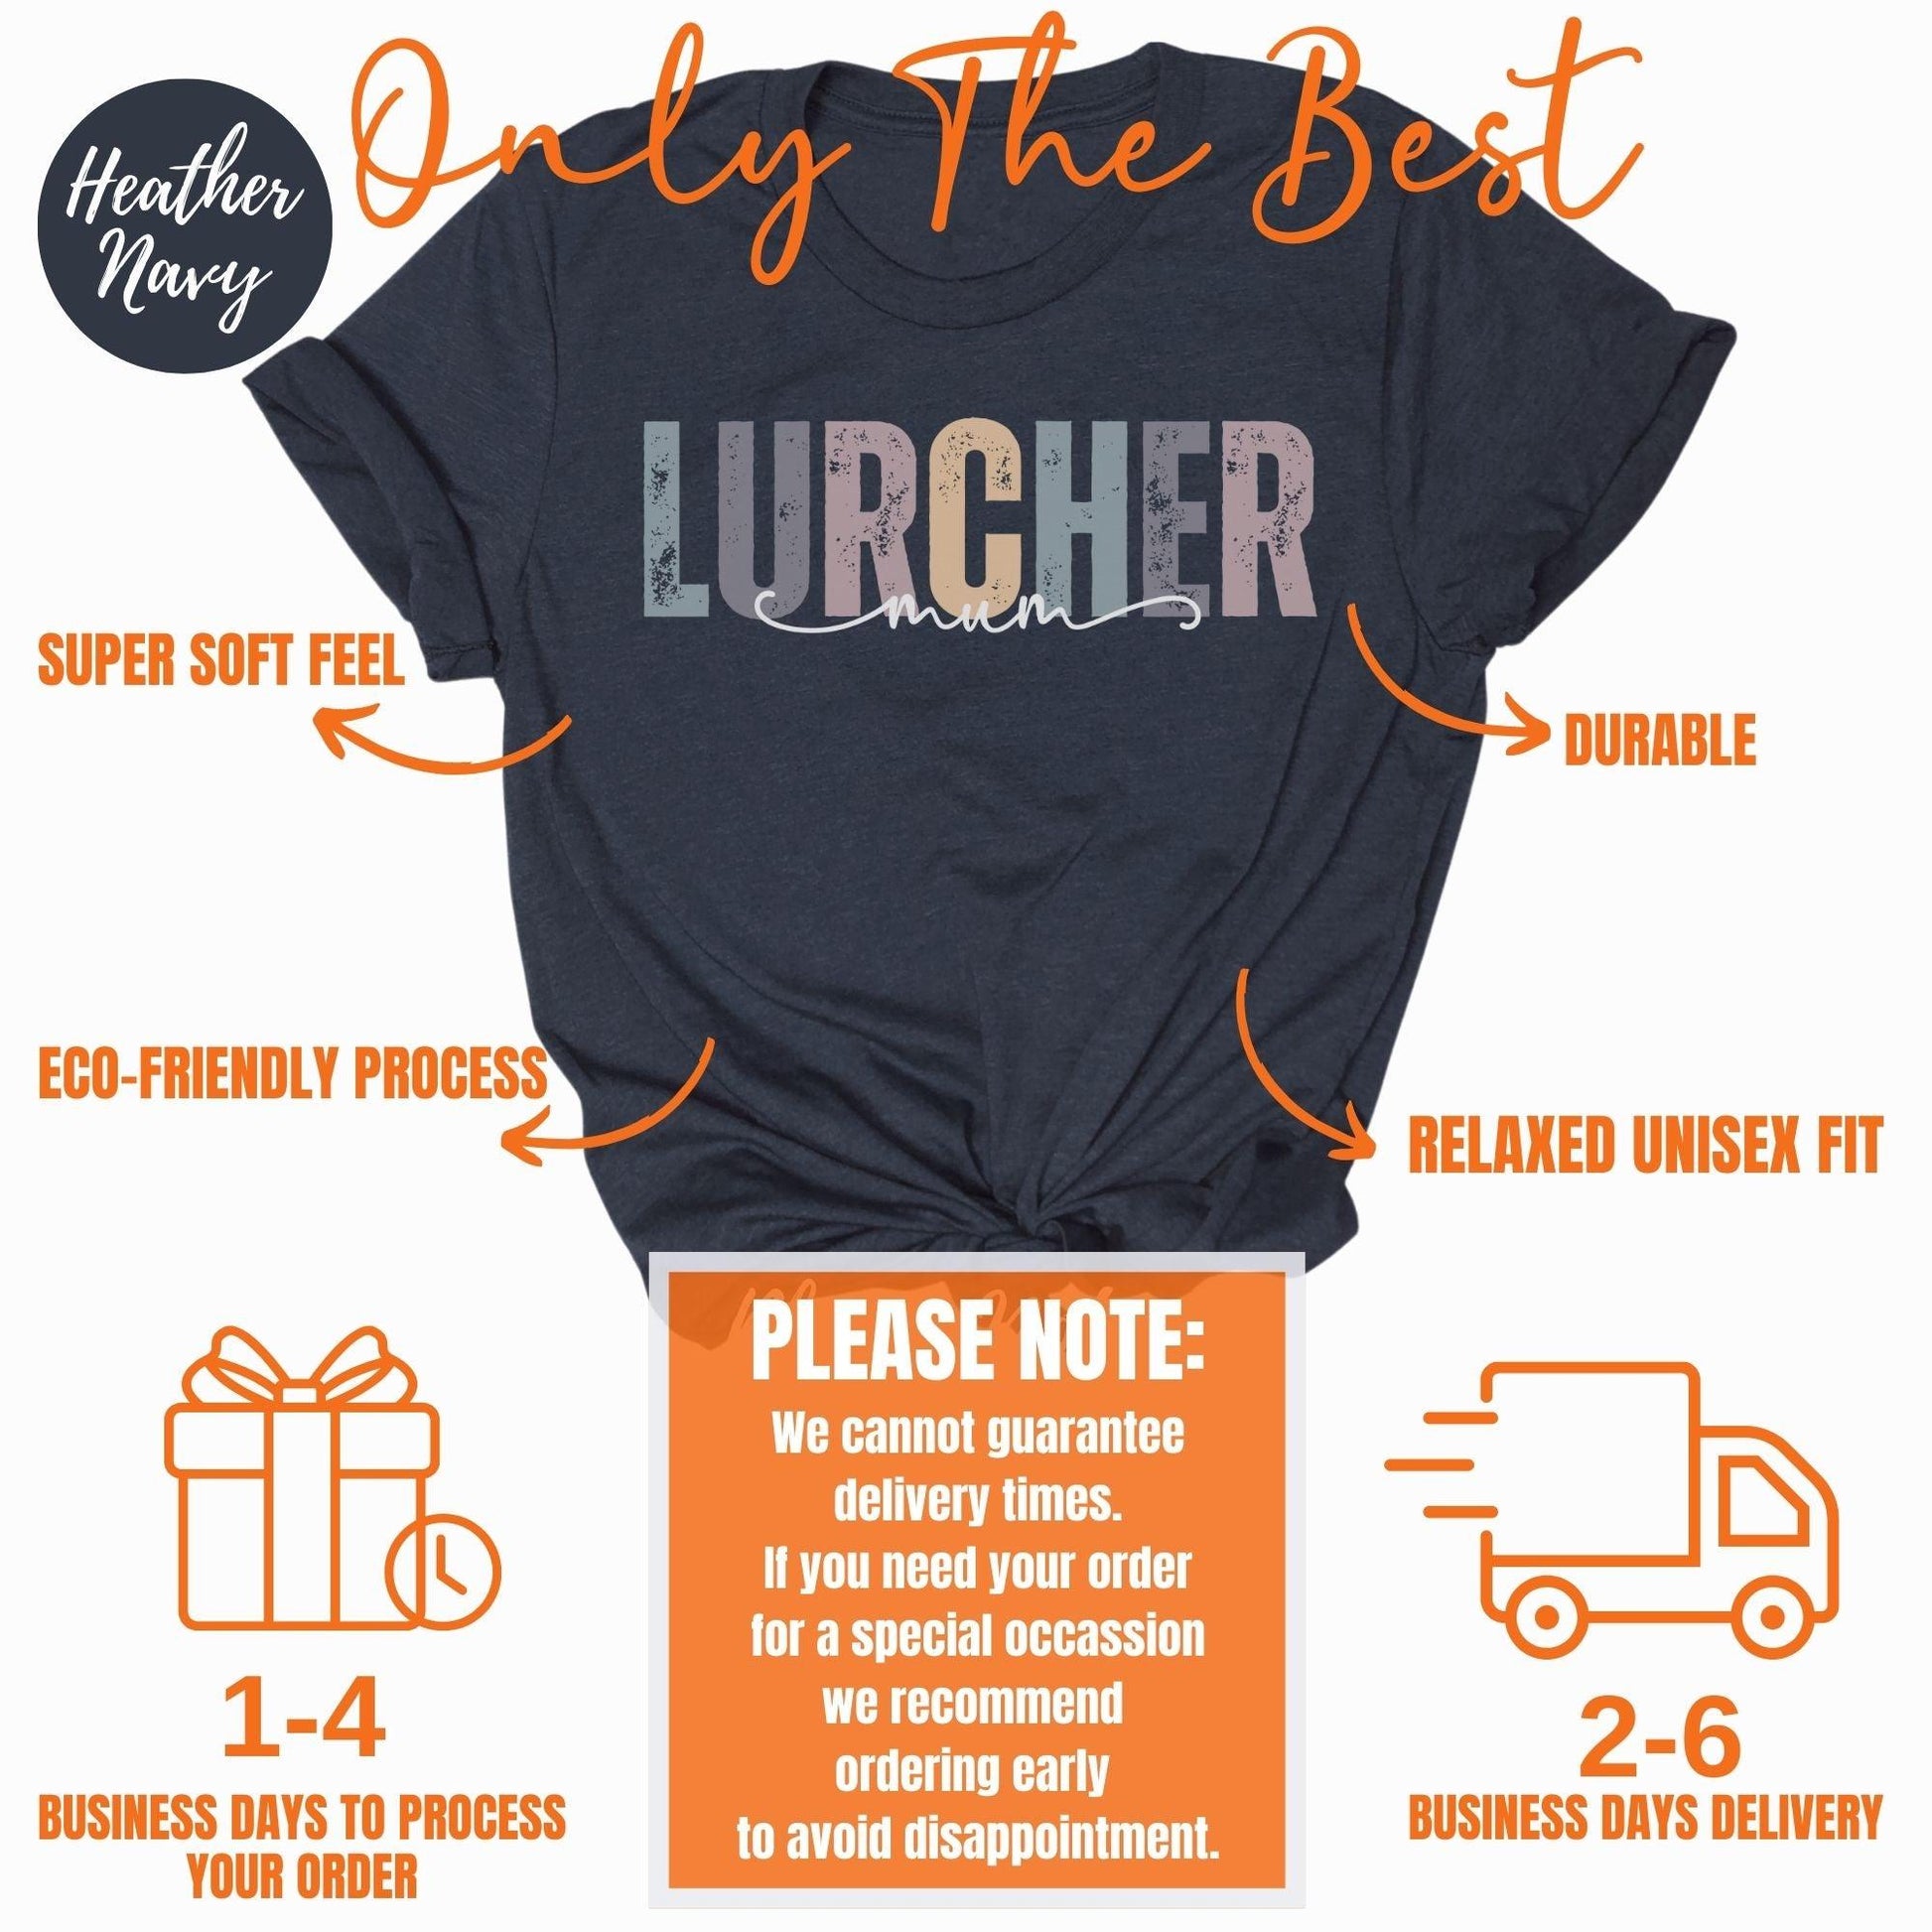 Lurcher Mum Tshirt - Happy Greys